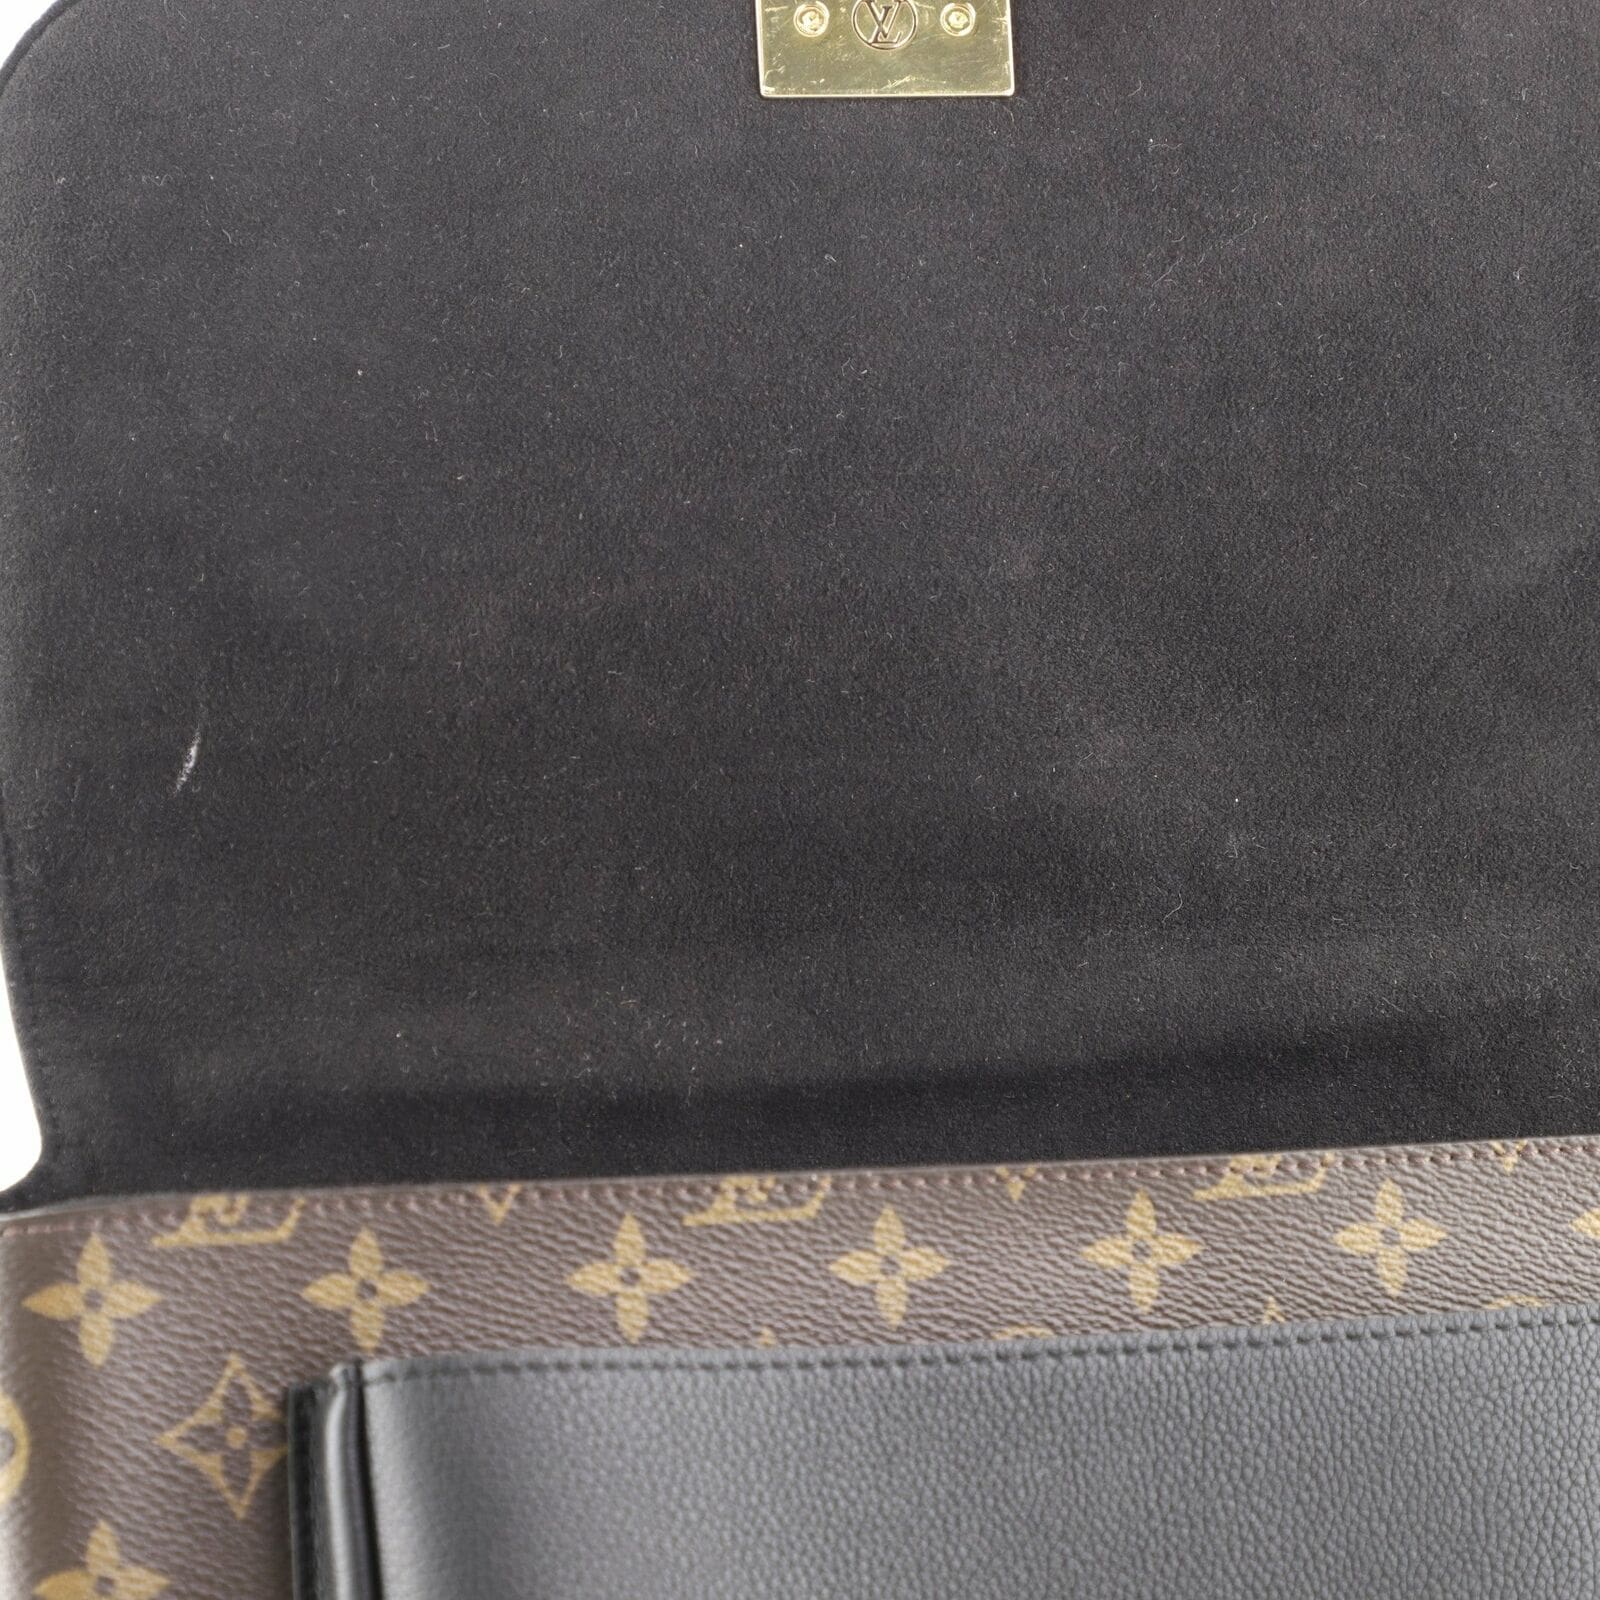 Louis Vuitton Black Monogram Canvas and Leather Marignan Bag Louis Vuitton